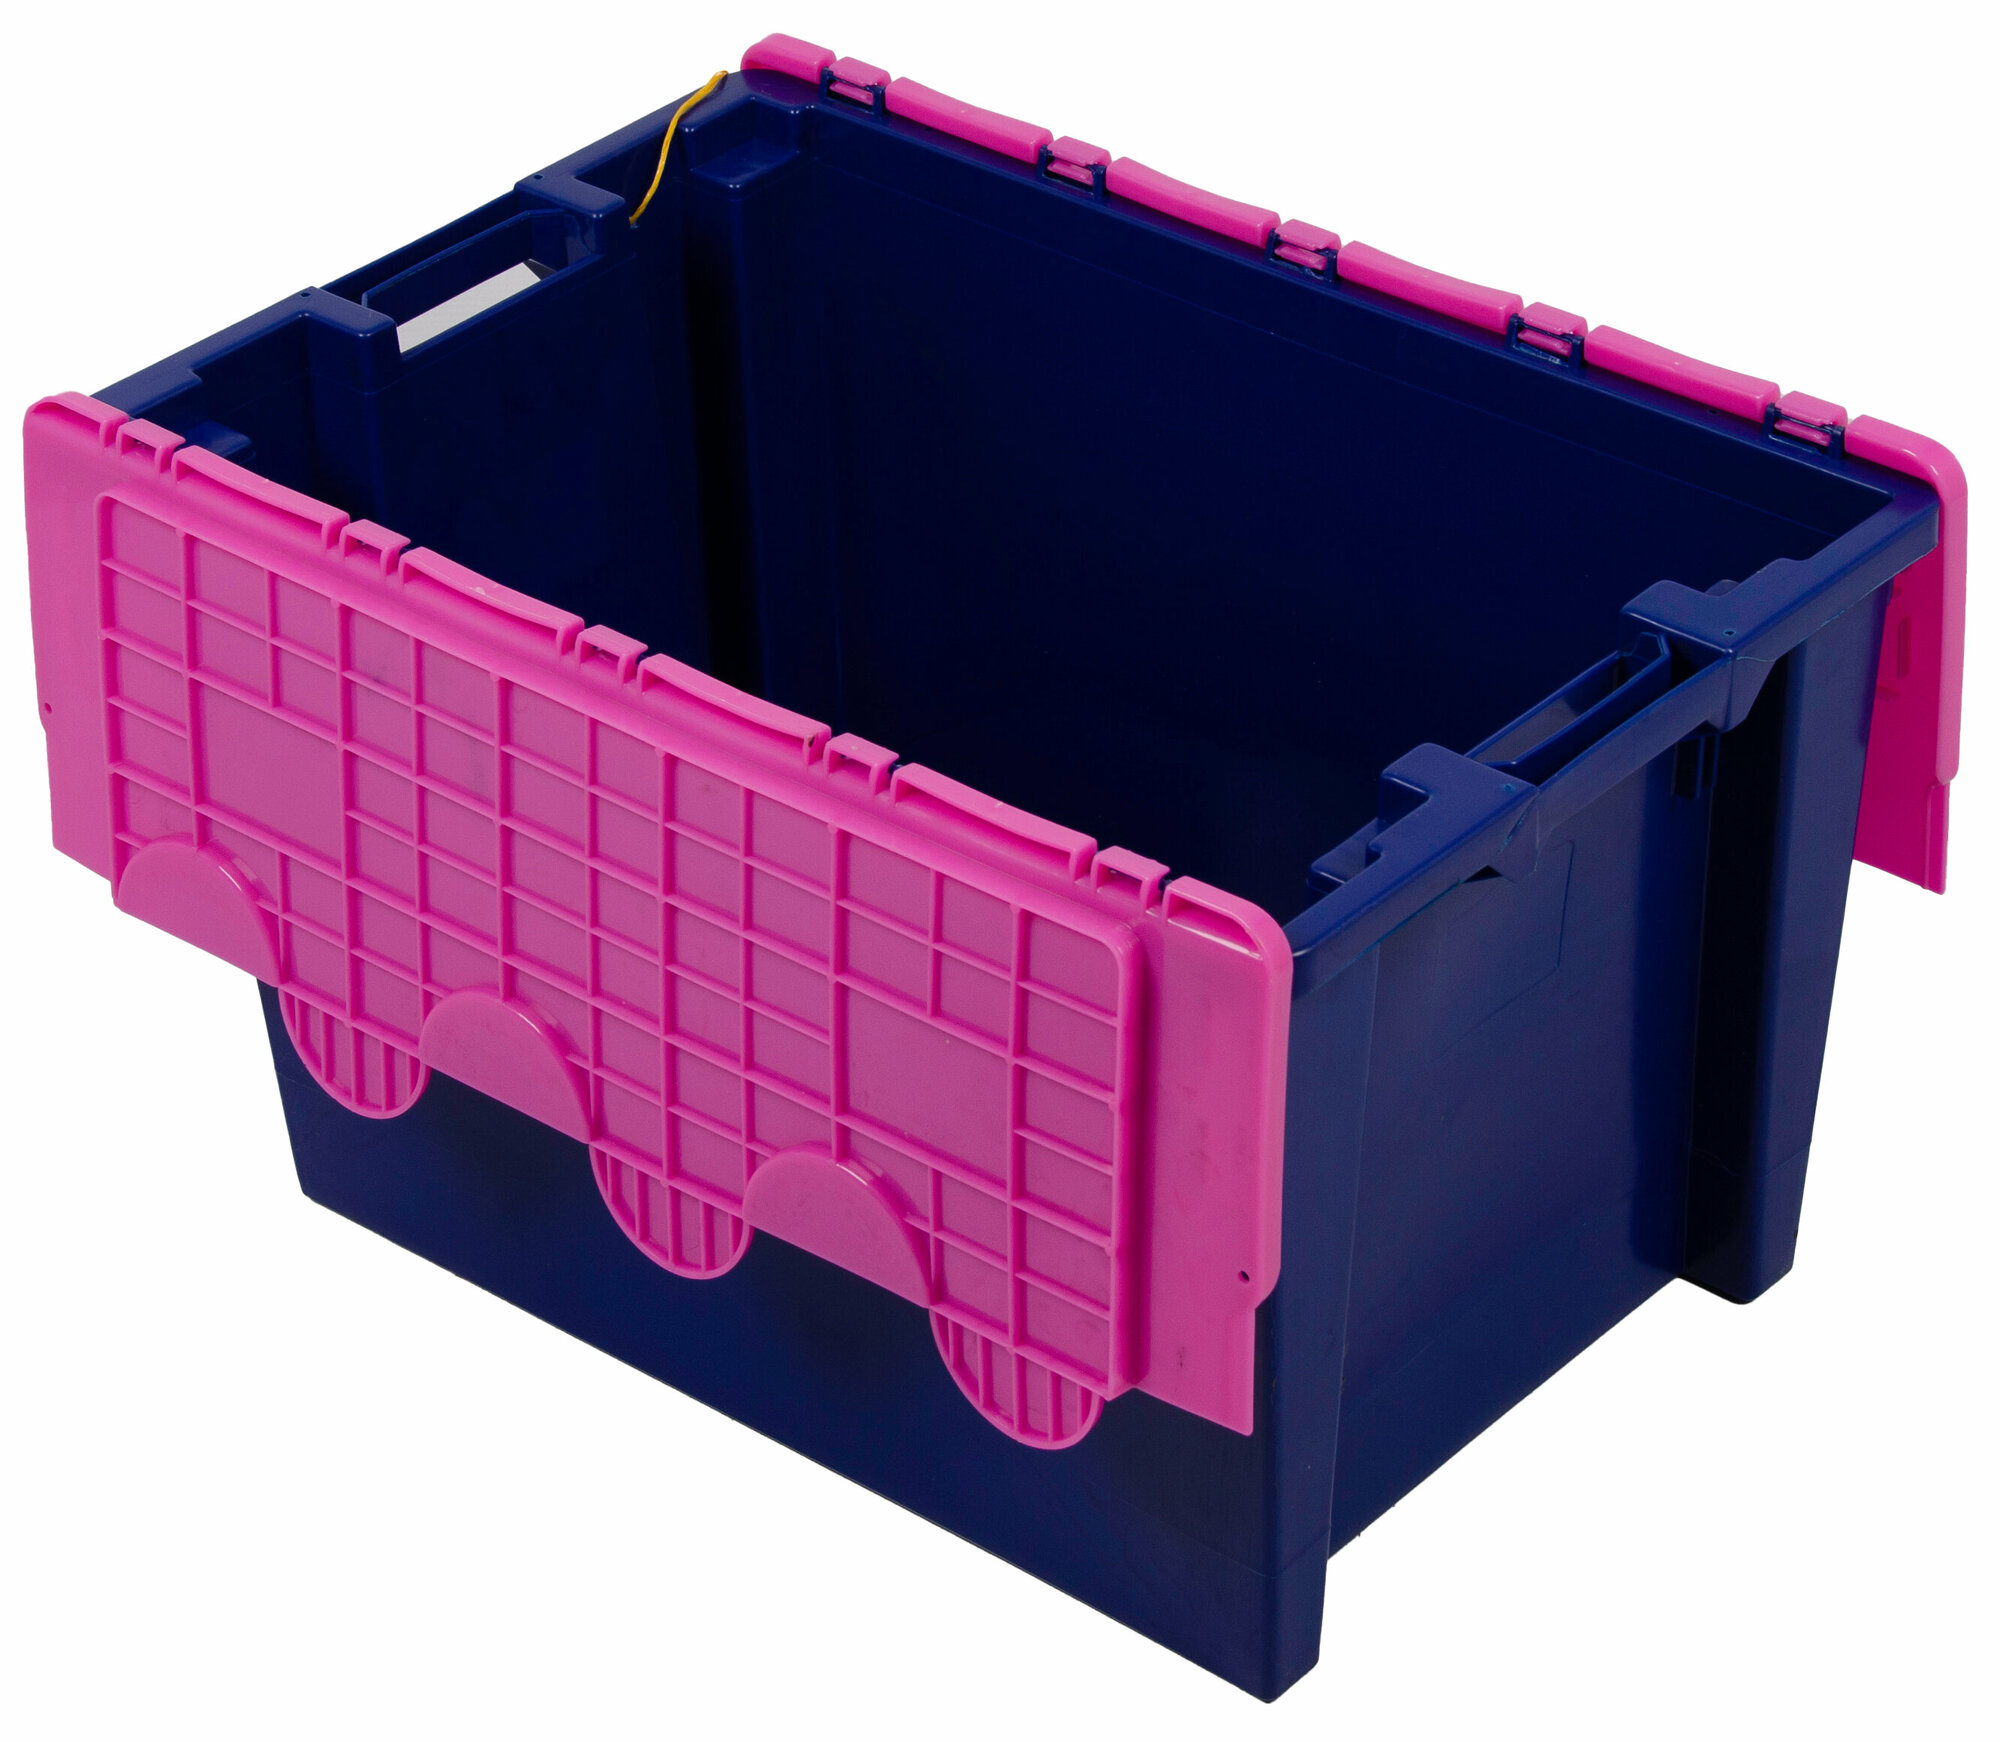 Ящик для хранения Safe Pro ПКФ Топаз 600400365-00 сплошной синий, с крышкой розовой